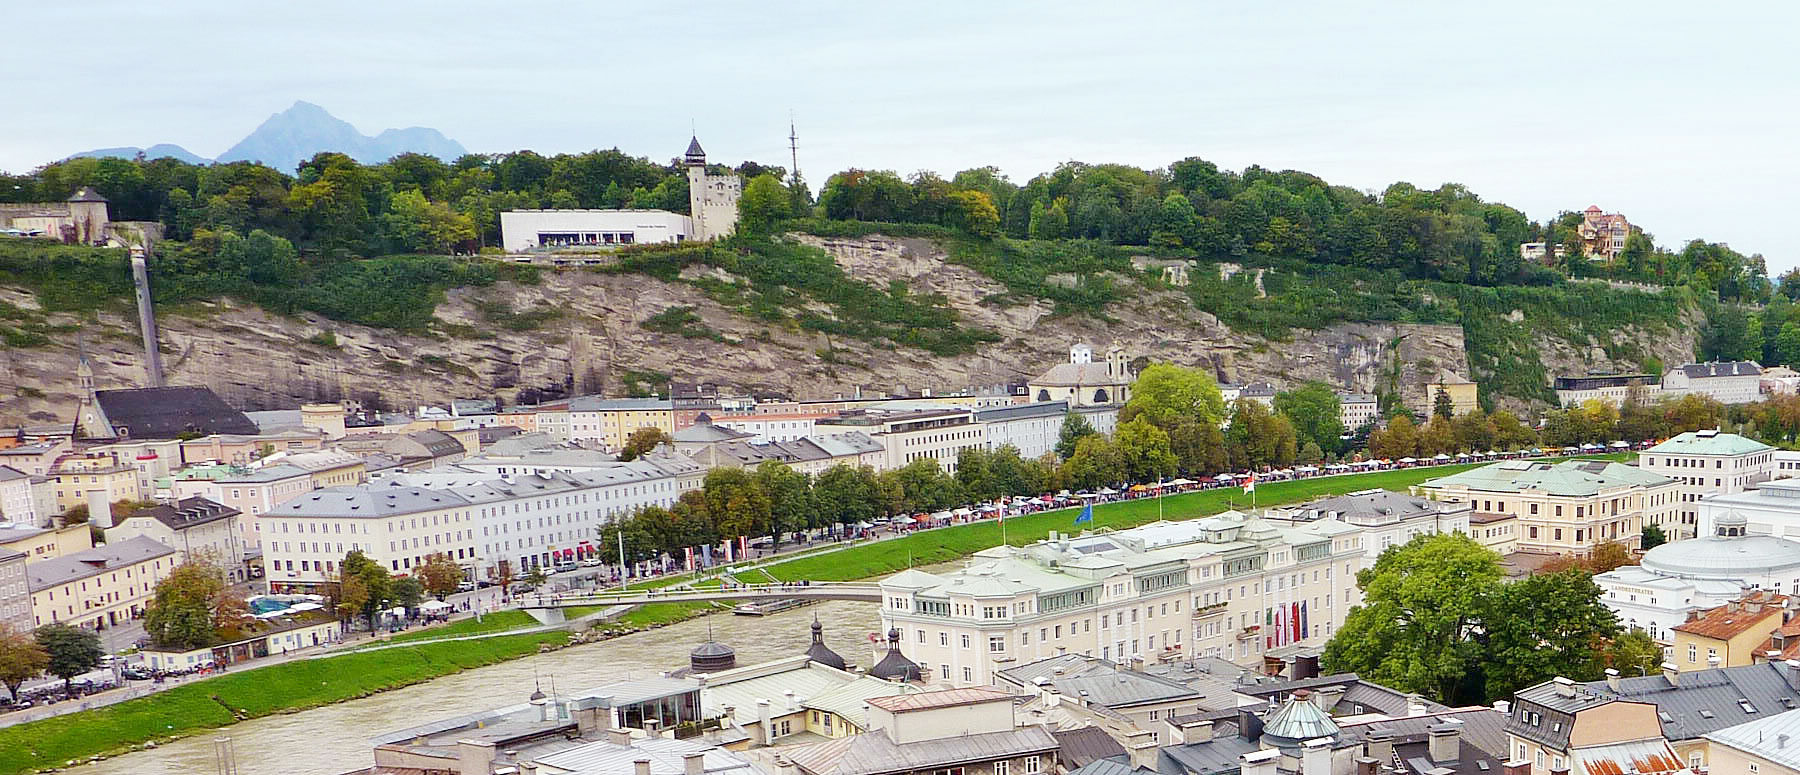 Blick auf die Stadt Salzburg mit dem Museum der Moderne